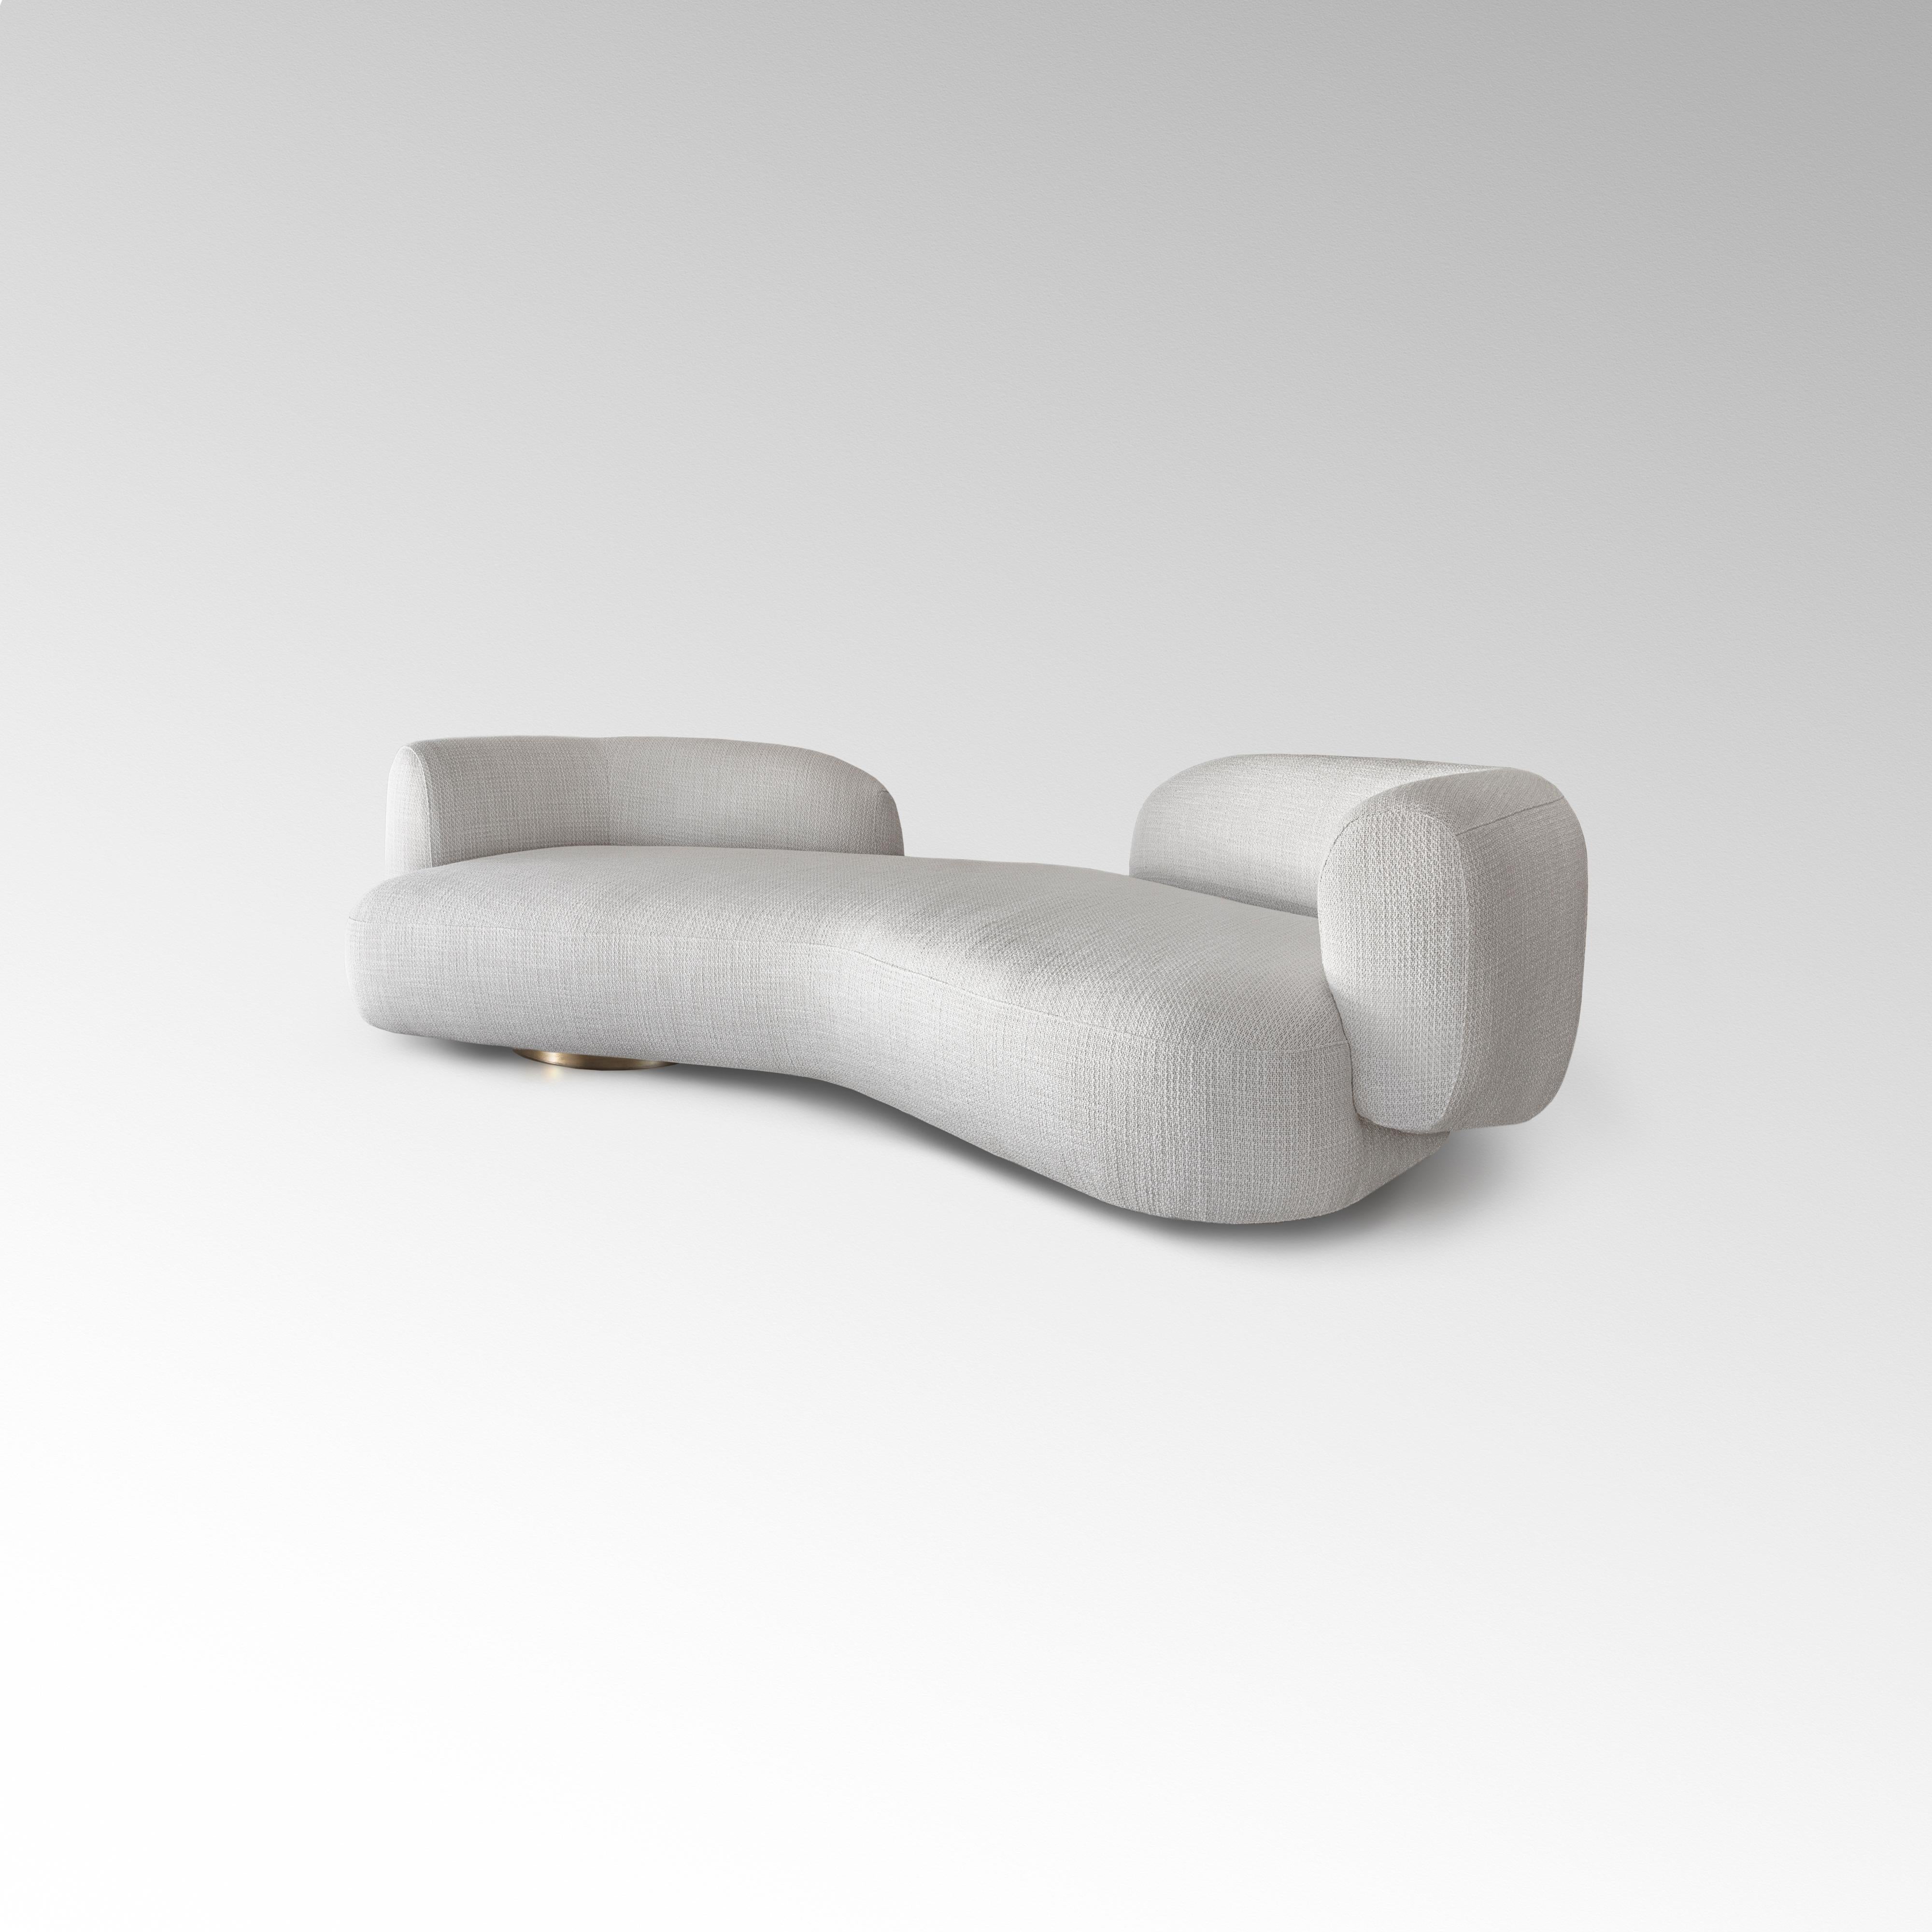 Die Form ist subtil asymmetrisch, die Sitztiefe variiert; die Rückenlehne geht von einem zentralen Plateau aus und spannt sich von einem freien Raum aus, der sich anmutig wölbt, um links und rechts elegant ausgestellte Arm- und Rückenlehnen zu